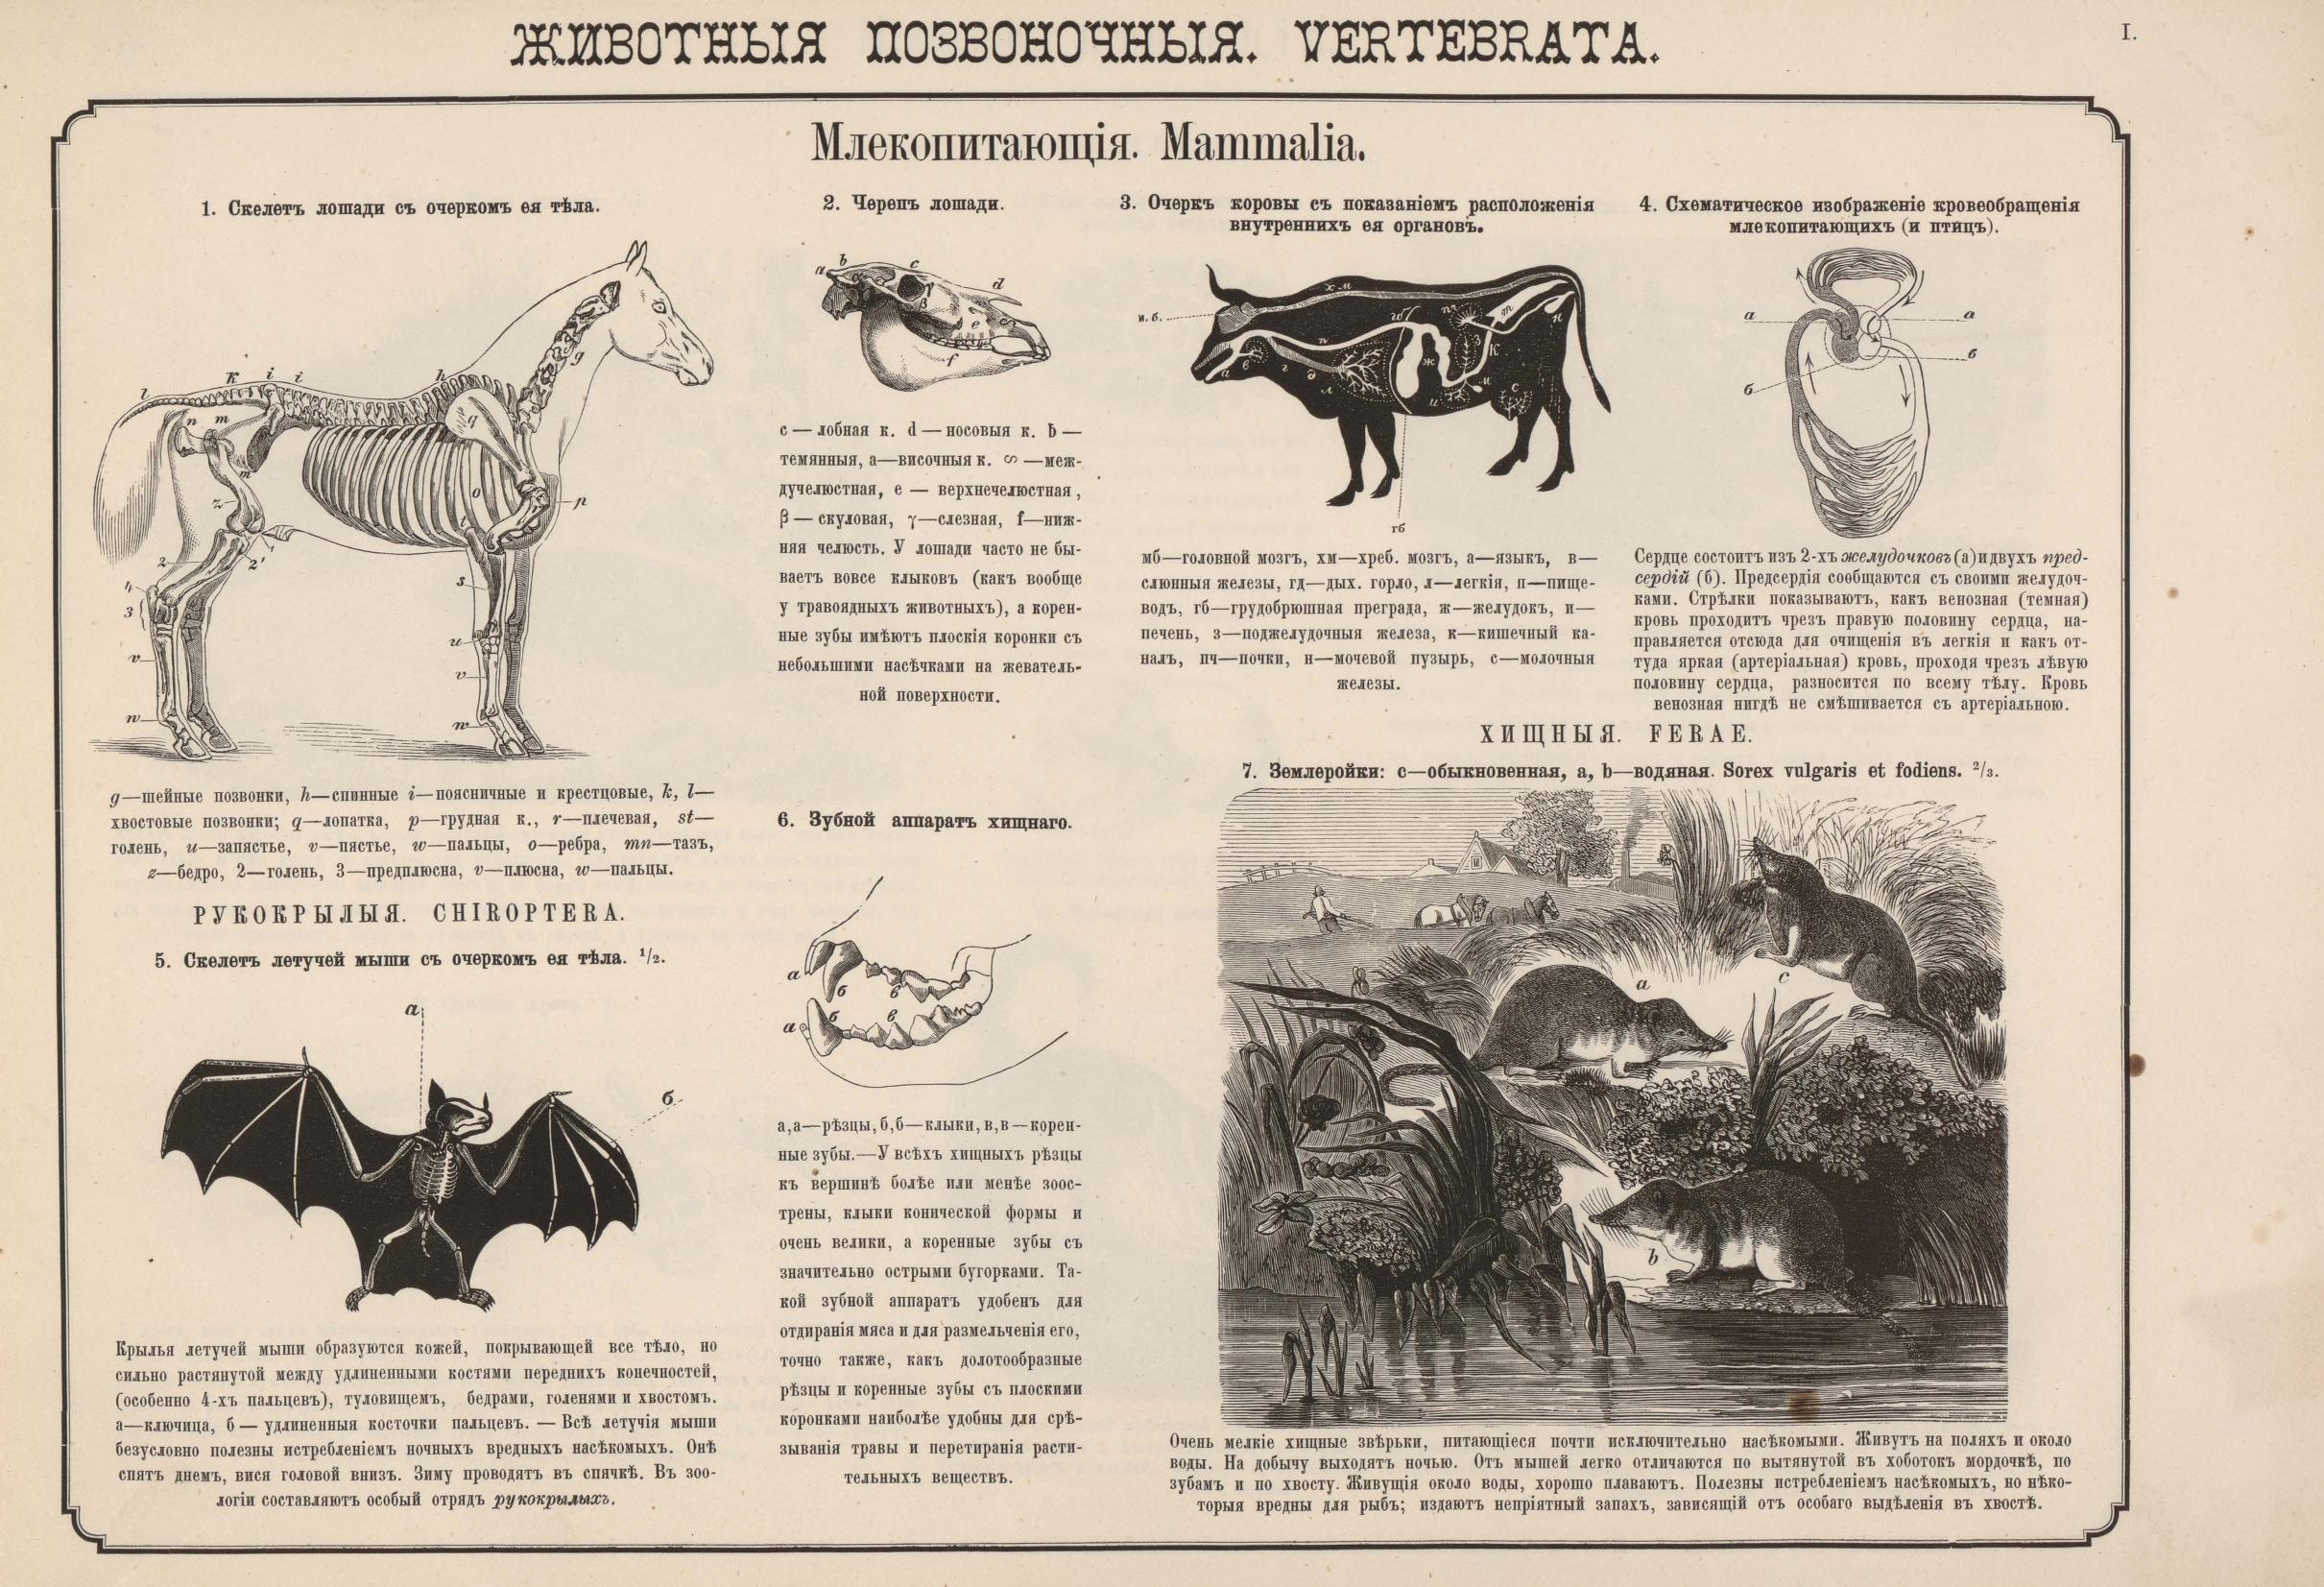 1876. Наглядное знакомство с животными, водящимися в Европейской России 